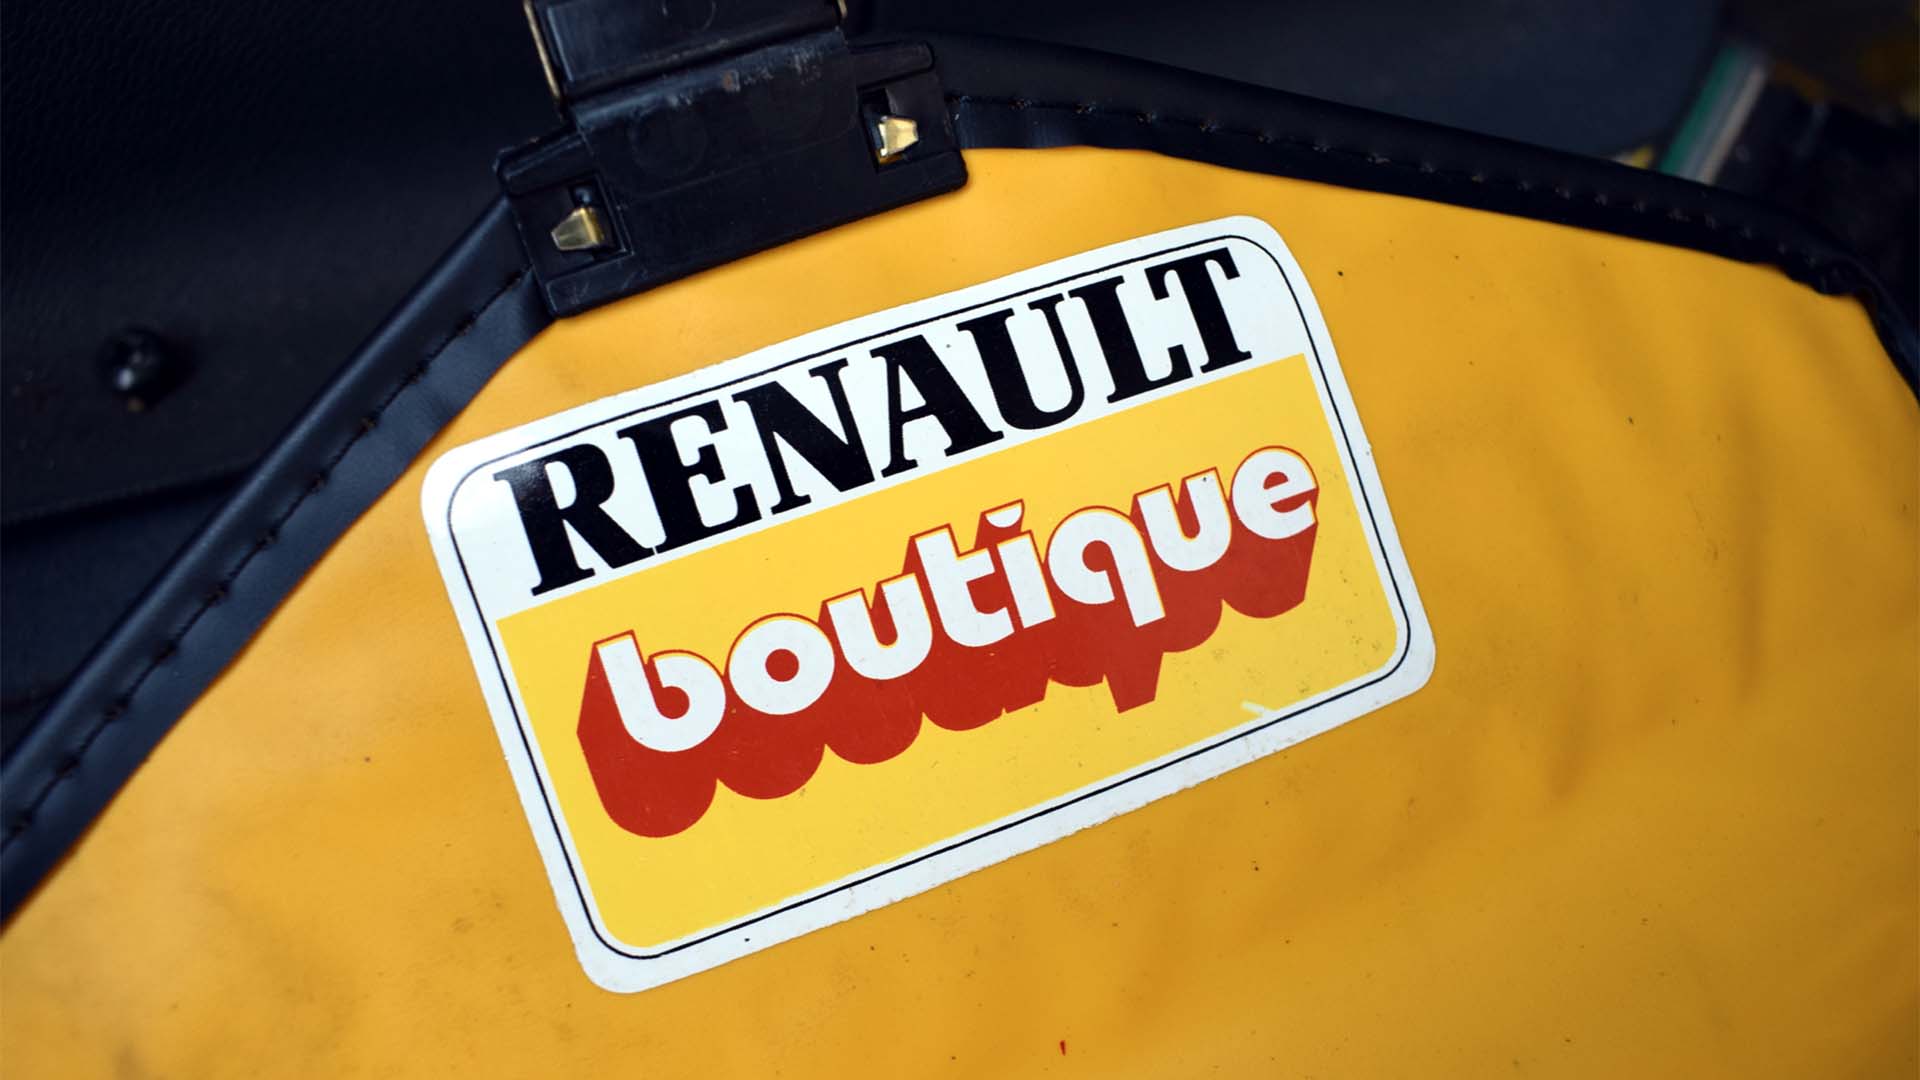 Renault Boutique